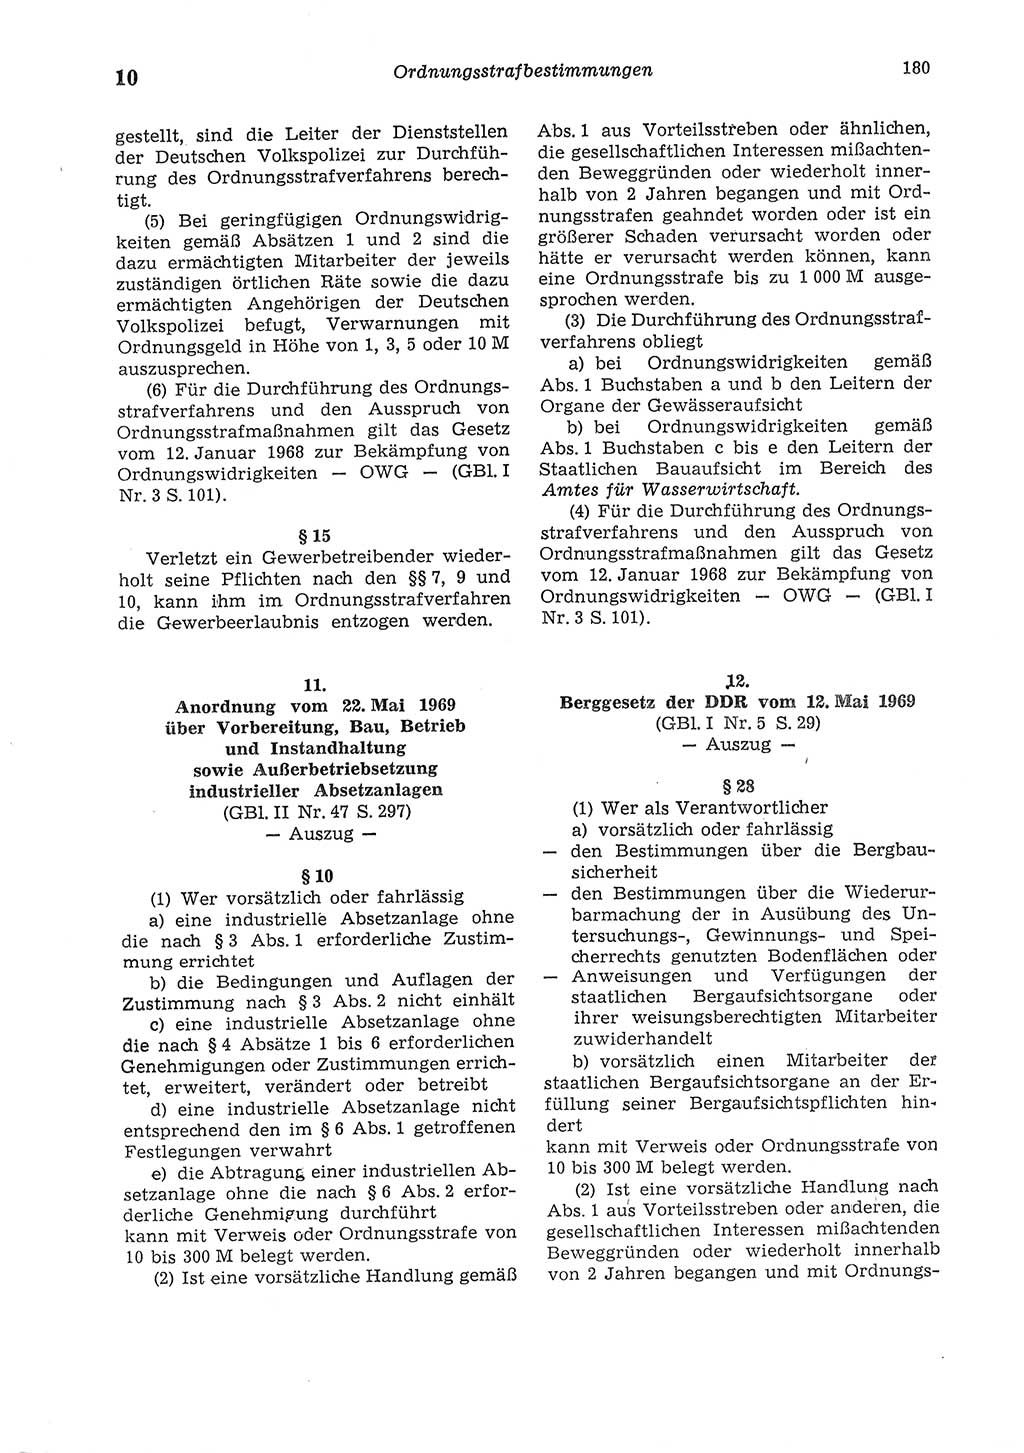 Strafgesetzbuch (StGB) der Deutschen Demokratischen Republik (DDR) und angrenzende Gesetze und Bestimmungen 1975, Seite 180 (StGB DDR Ges. Best. 1975, S. 180)